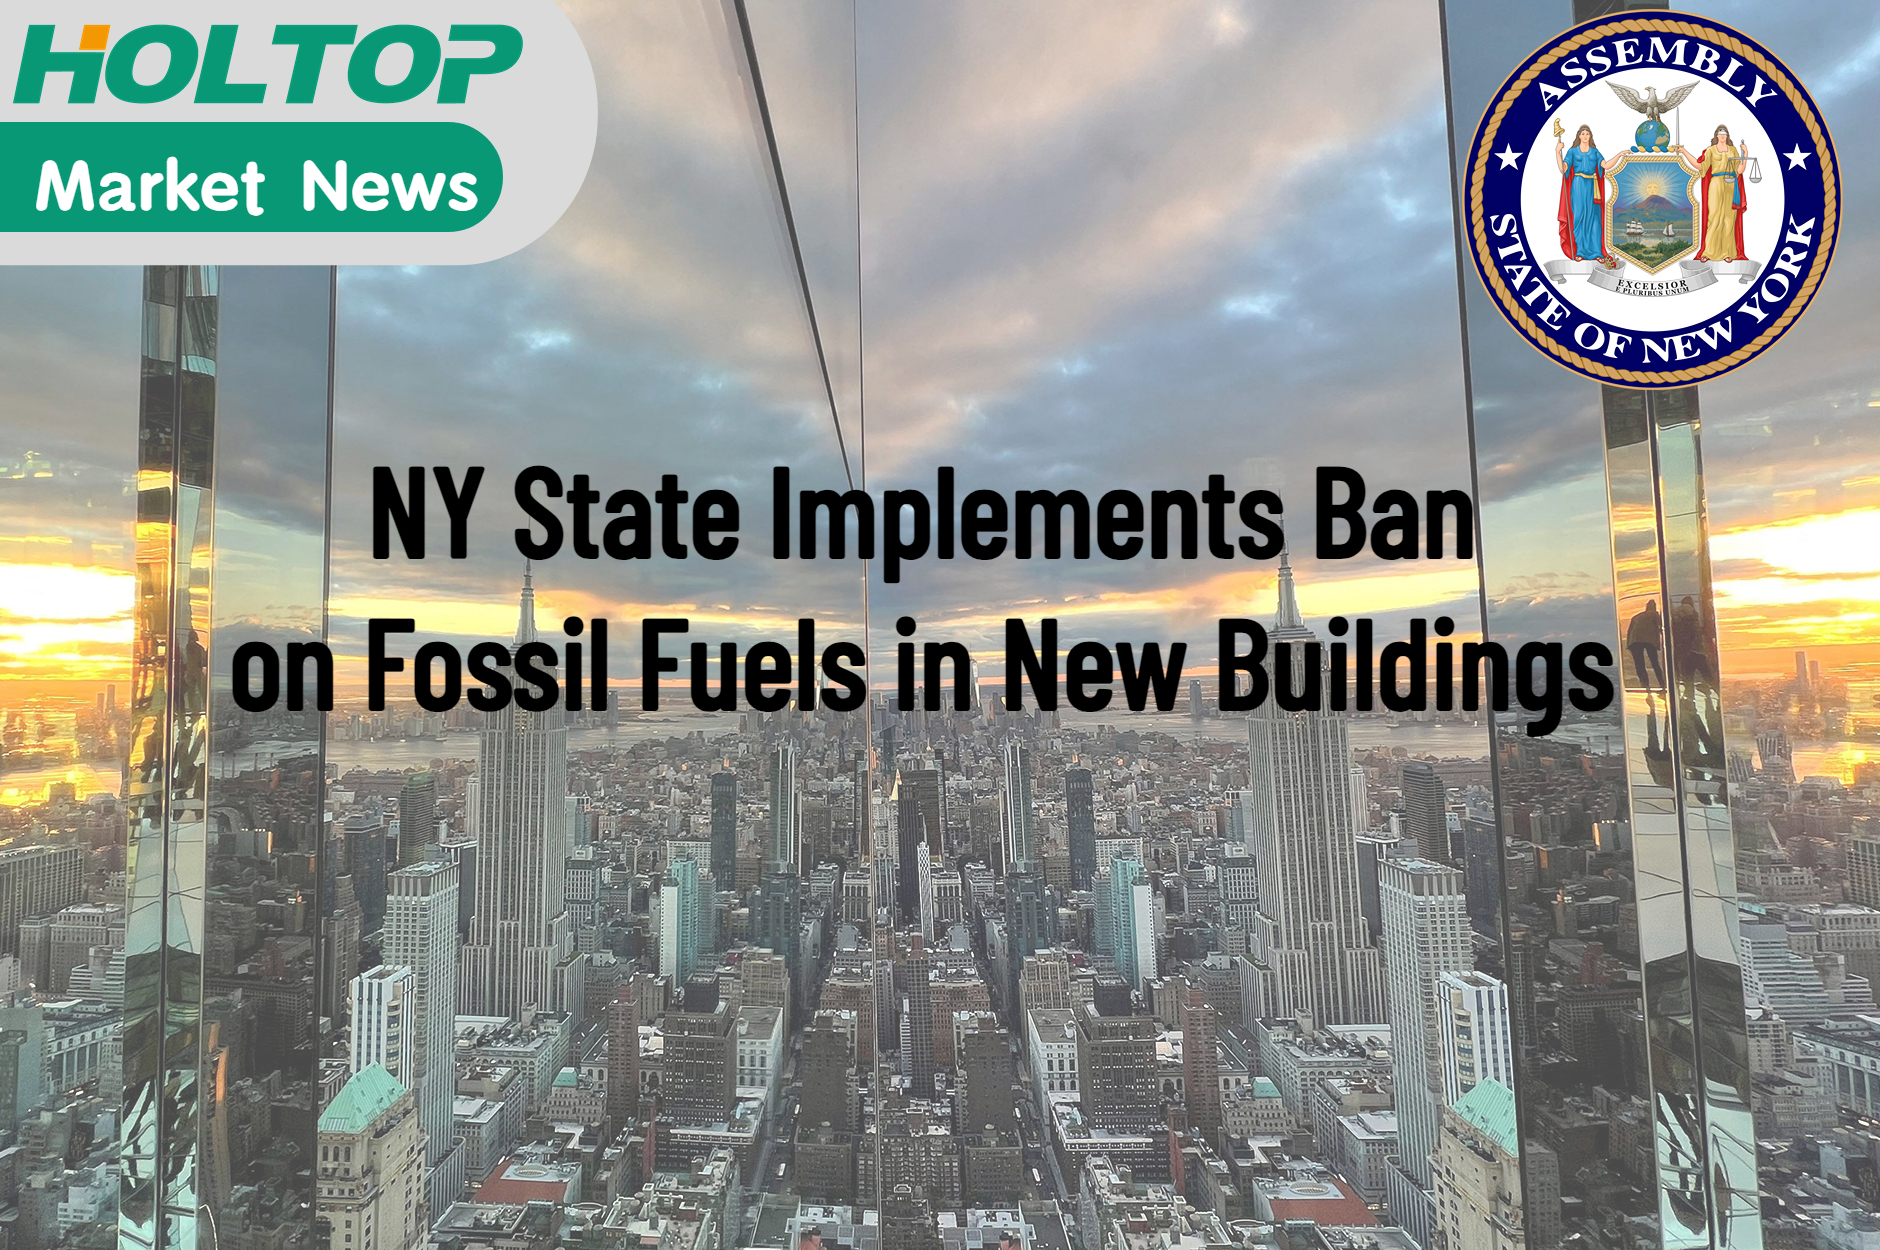 NY State implementerer forbud mot fossilt brensel i nye bygninger